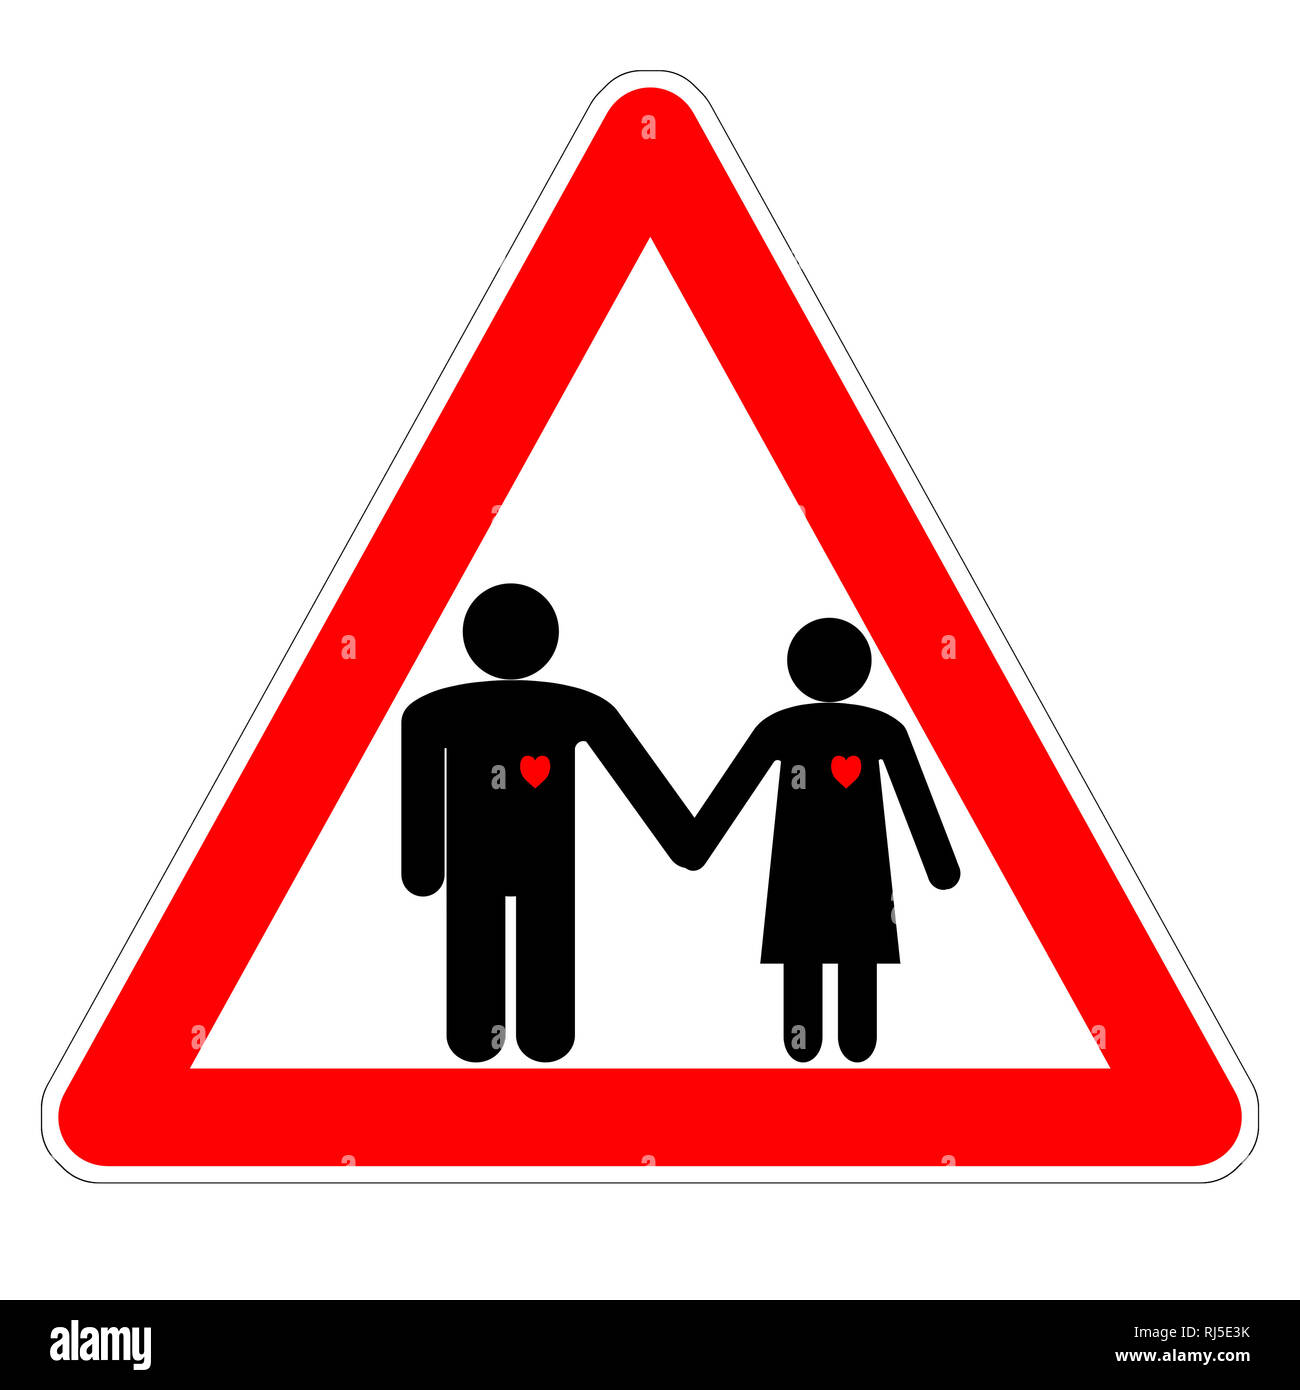 Illustrazione del segno triangolare "Attenzione, amante!" il giorno di San Valentino, il nero le figure di un uomo e di una donna che si tengono per mano con cuori rossi Foto Stock